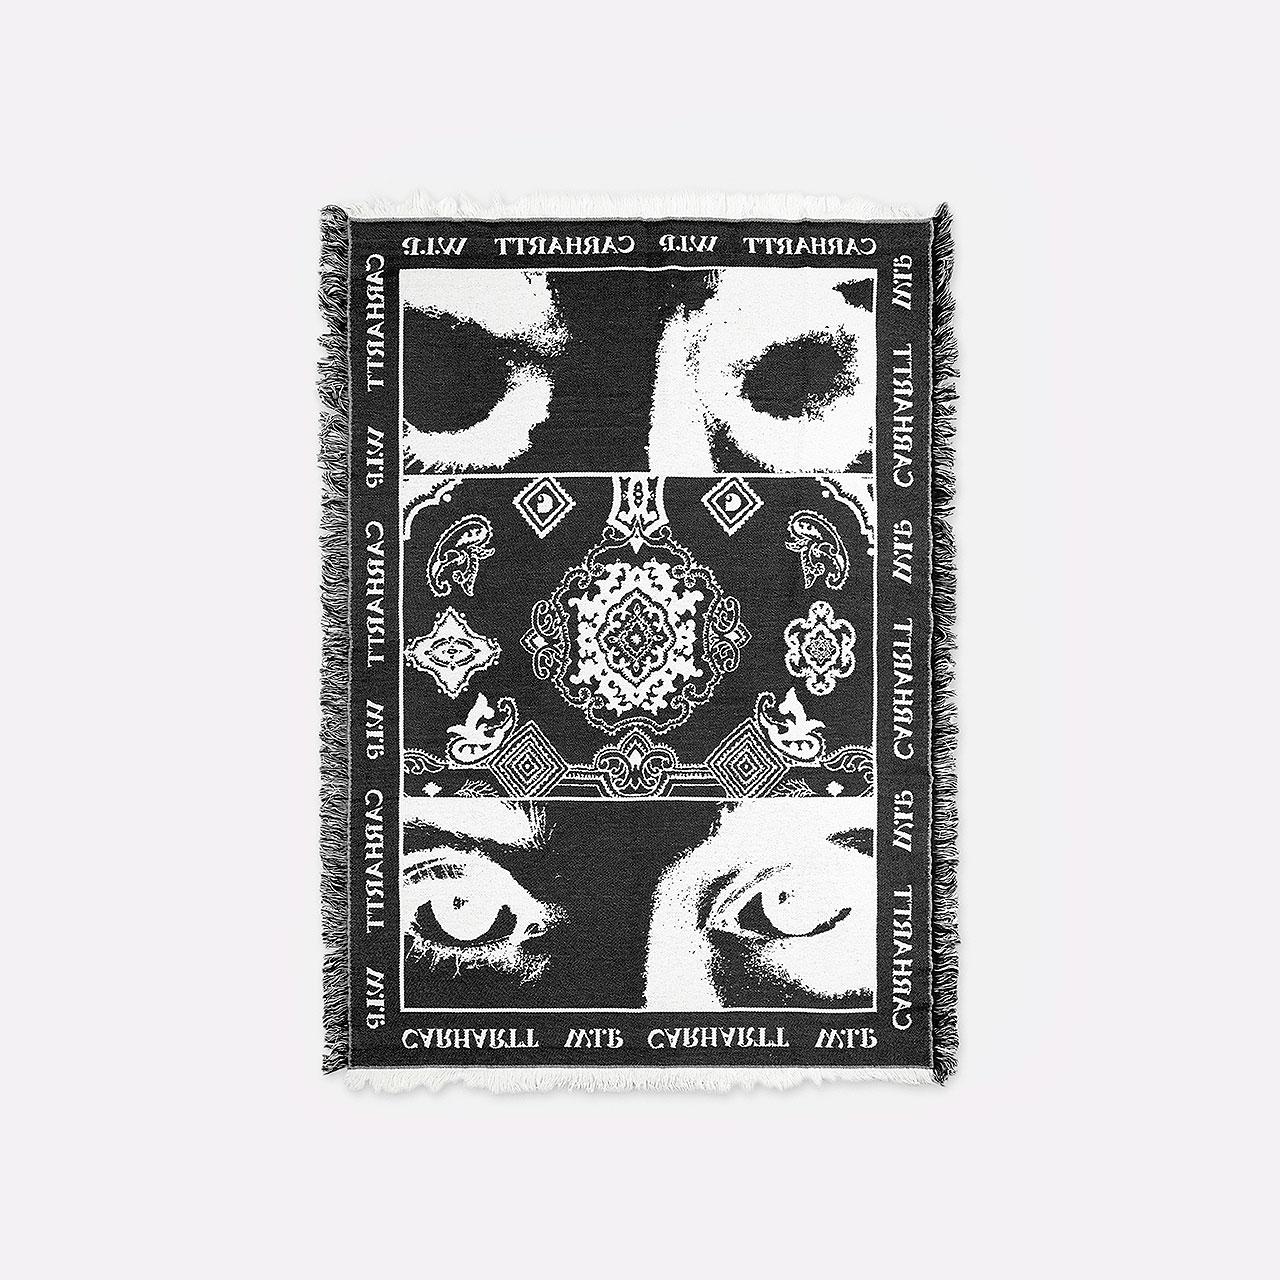  черный плед Carhartt WIP Scope Woven Blanket I031016-wax/black - цена, описание, фото 1